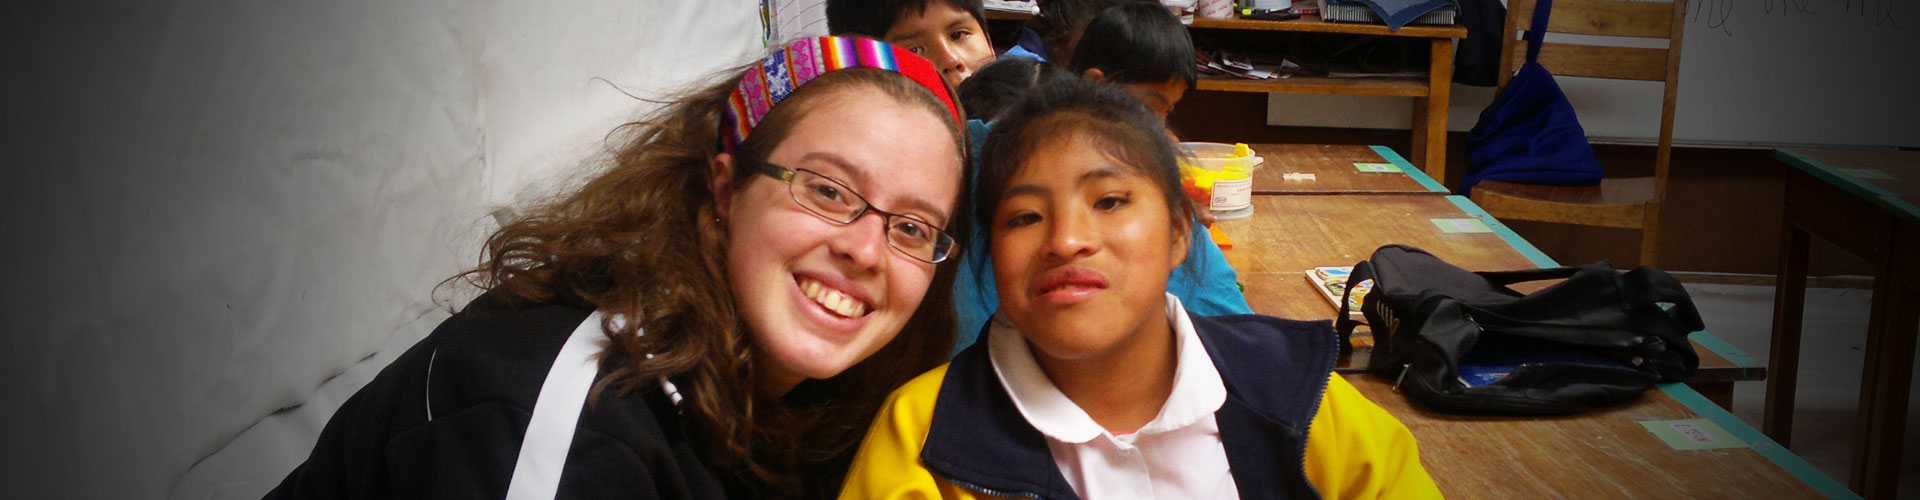 Volontariato in Perù - Cusco per l'assistenza ai disabili